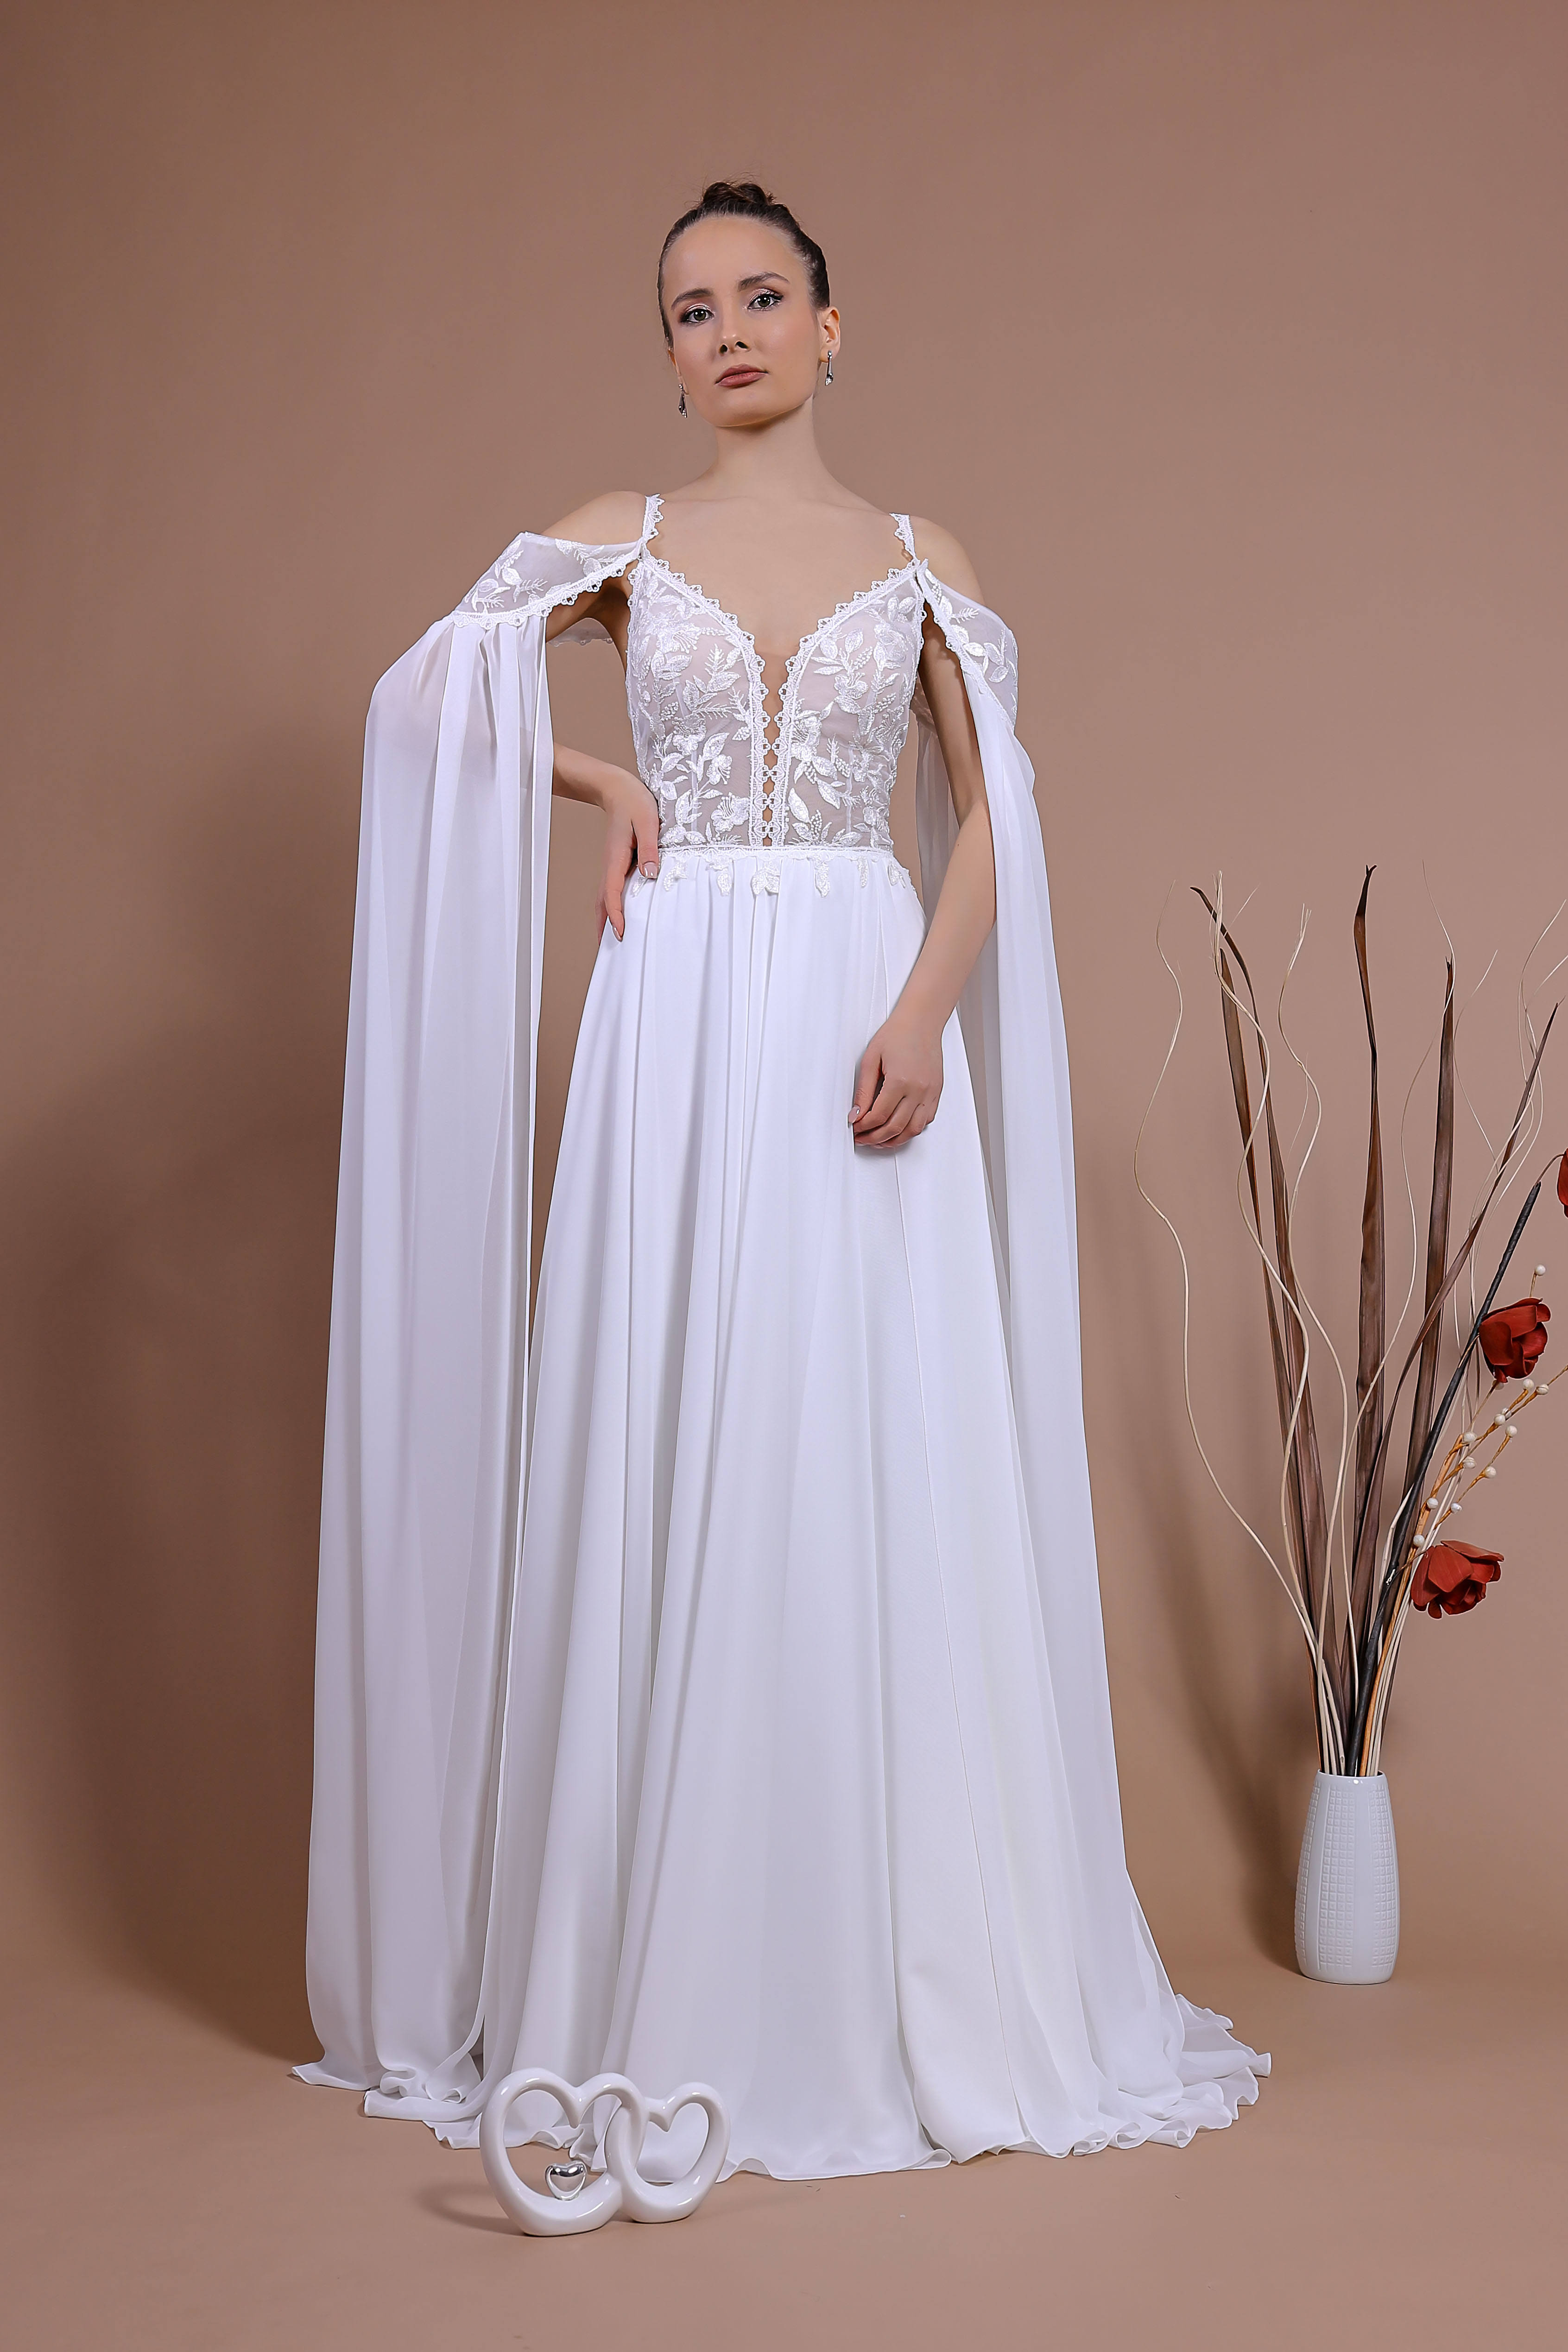 Schantal Brautkleid aus der Kollektion „Traum“, Modell 14139. Foto 4